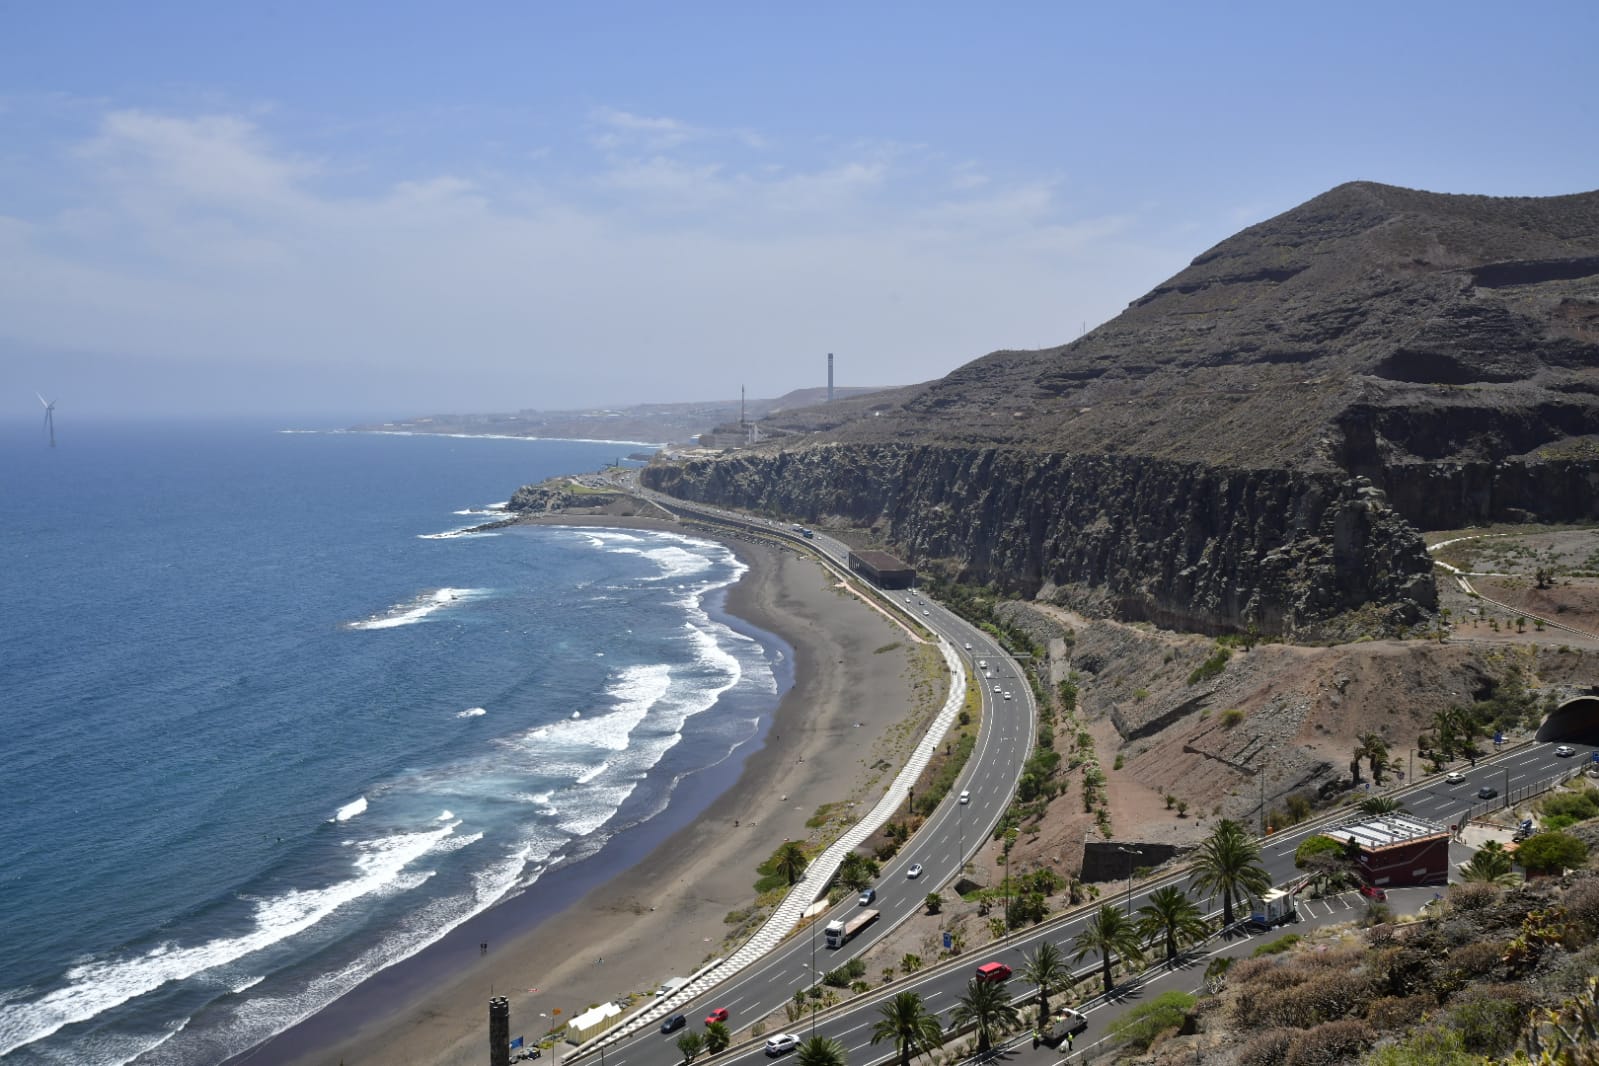 Fotos: El calor seguirá apretando con fuerza en Canarias hasta mañana